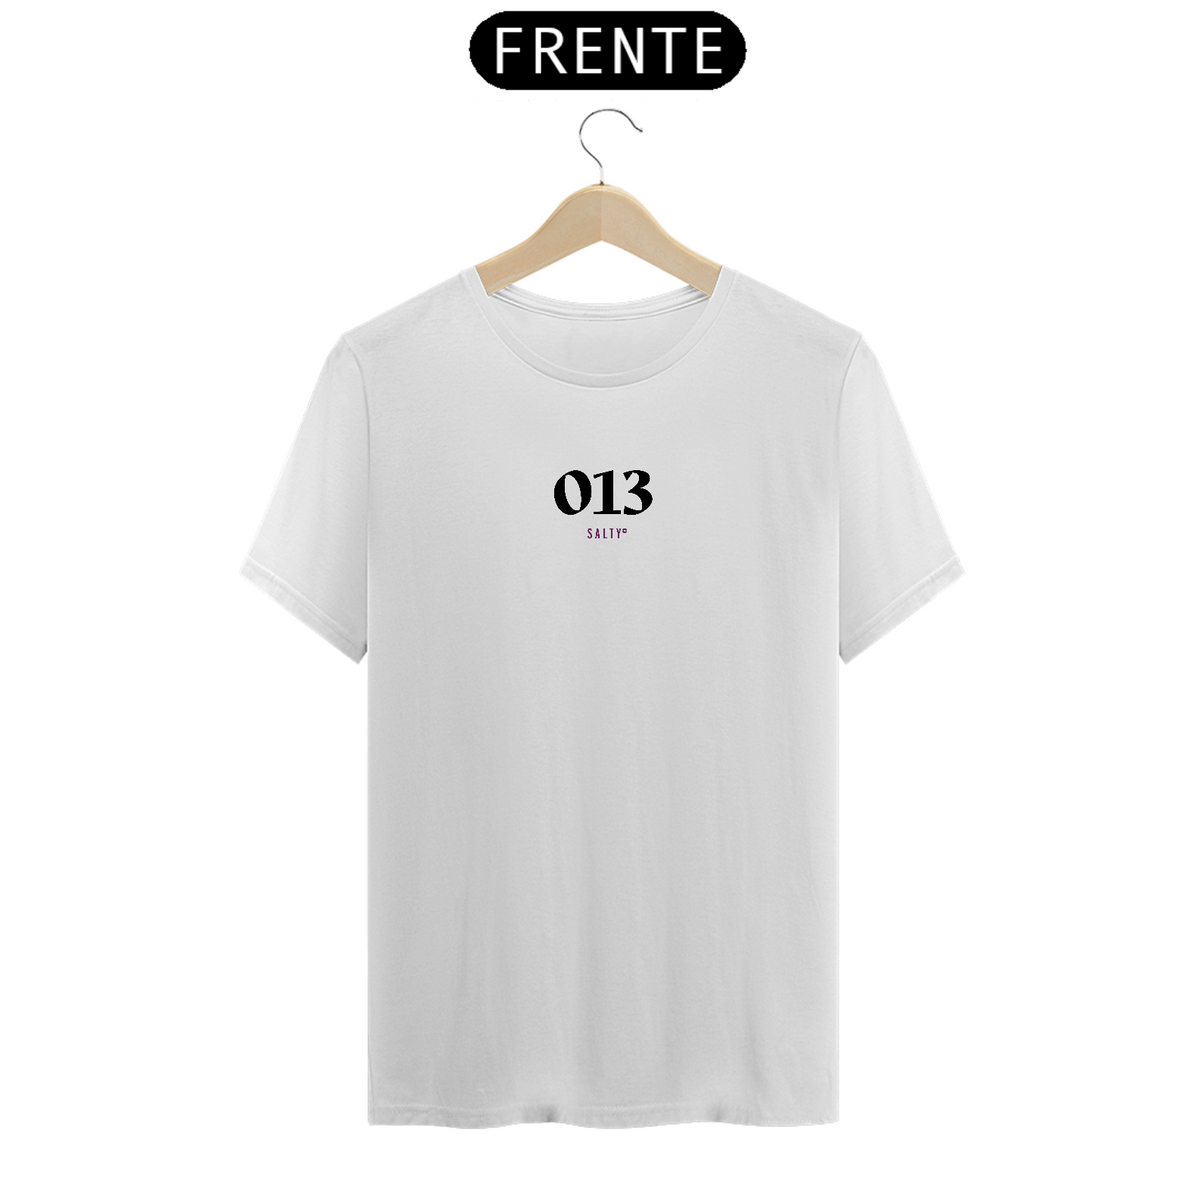 Nome do produto: Camiseta 013